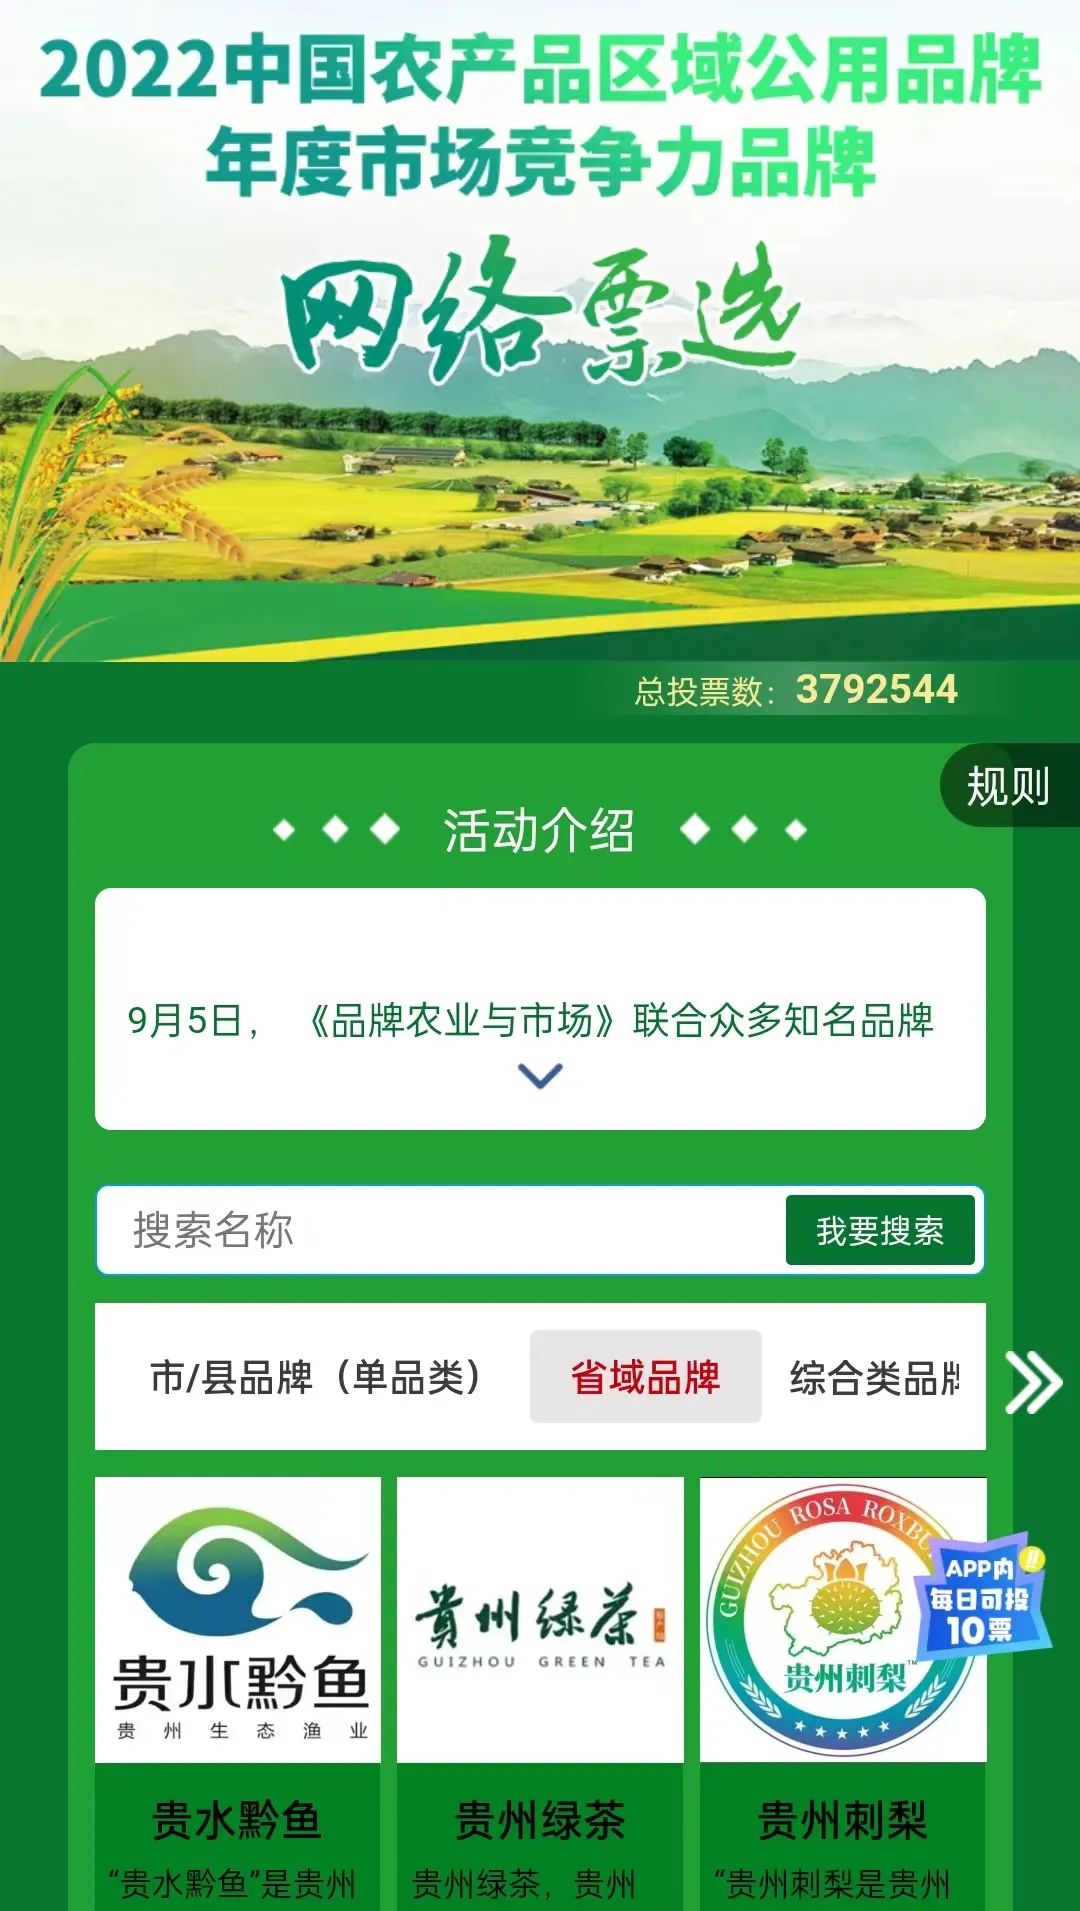 “2022中国农产品区域共用品牌·年度市场竞争力品牌”网络票选活动圆满结束 贵州绿茶荣登榜首！